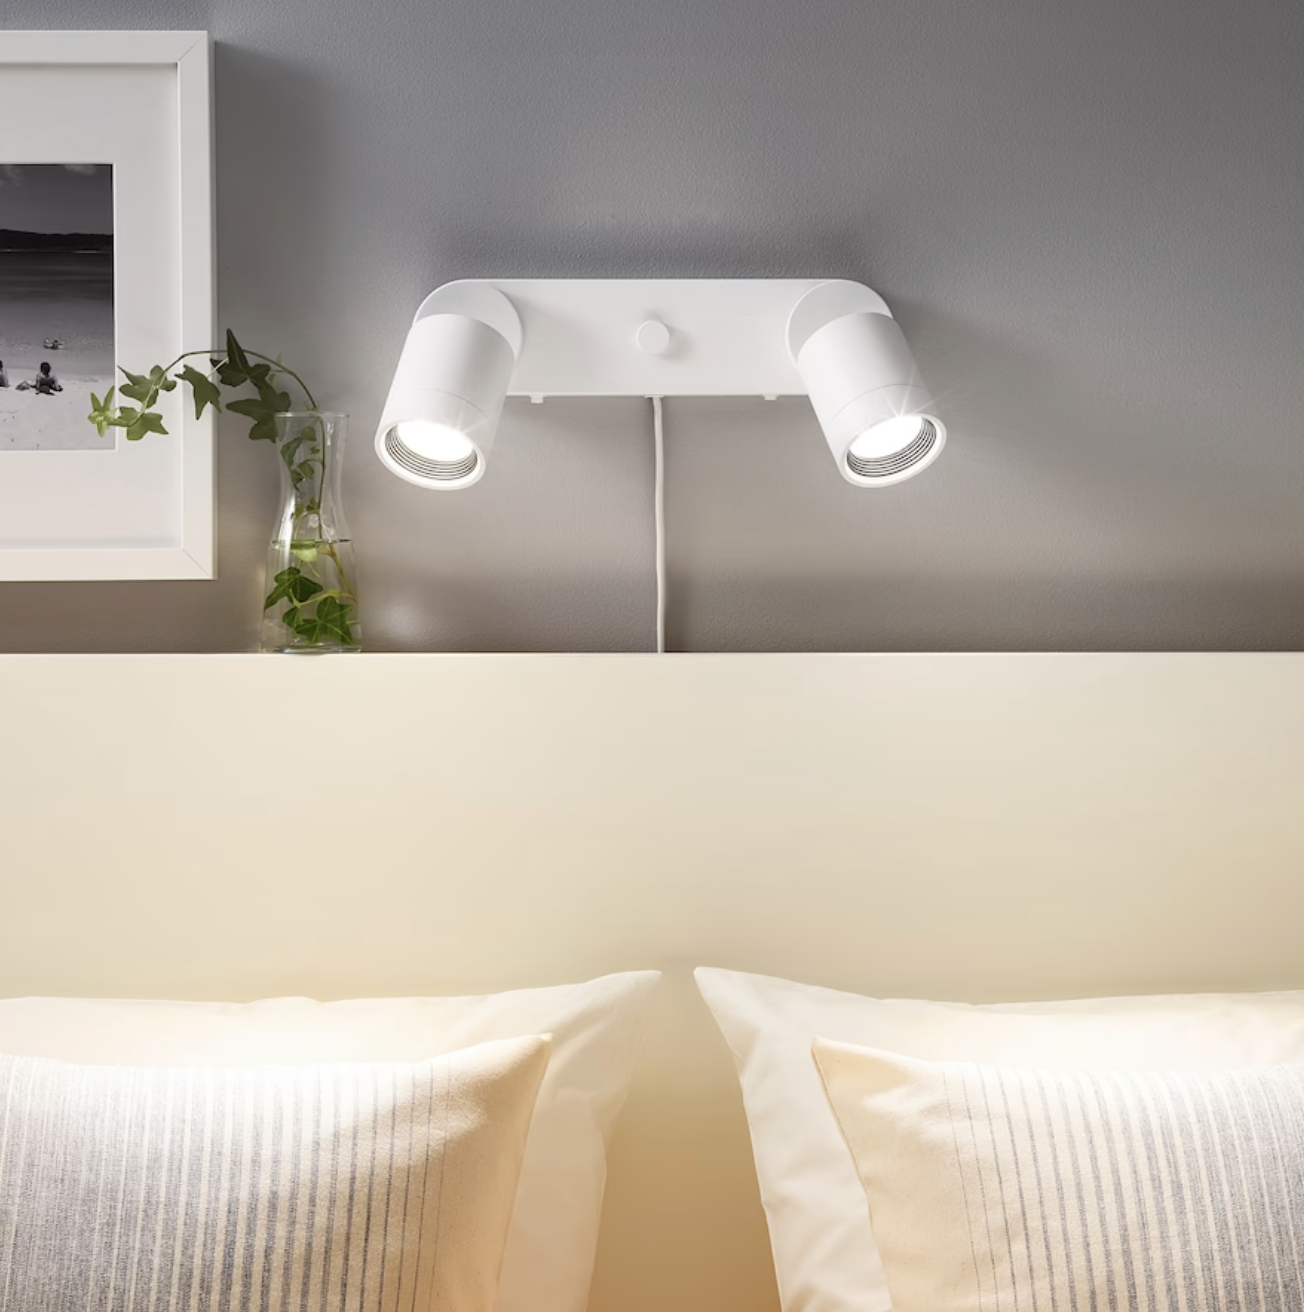 Dormitorio pequen~o con aplique doble NYMÅNE de IKEA.